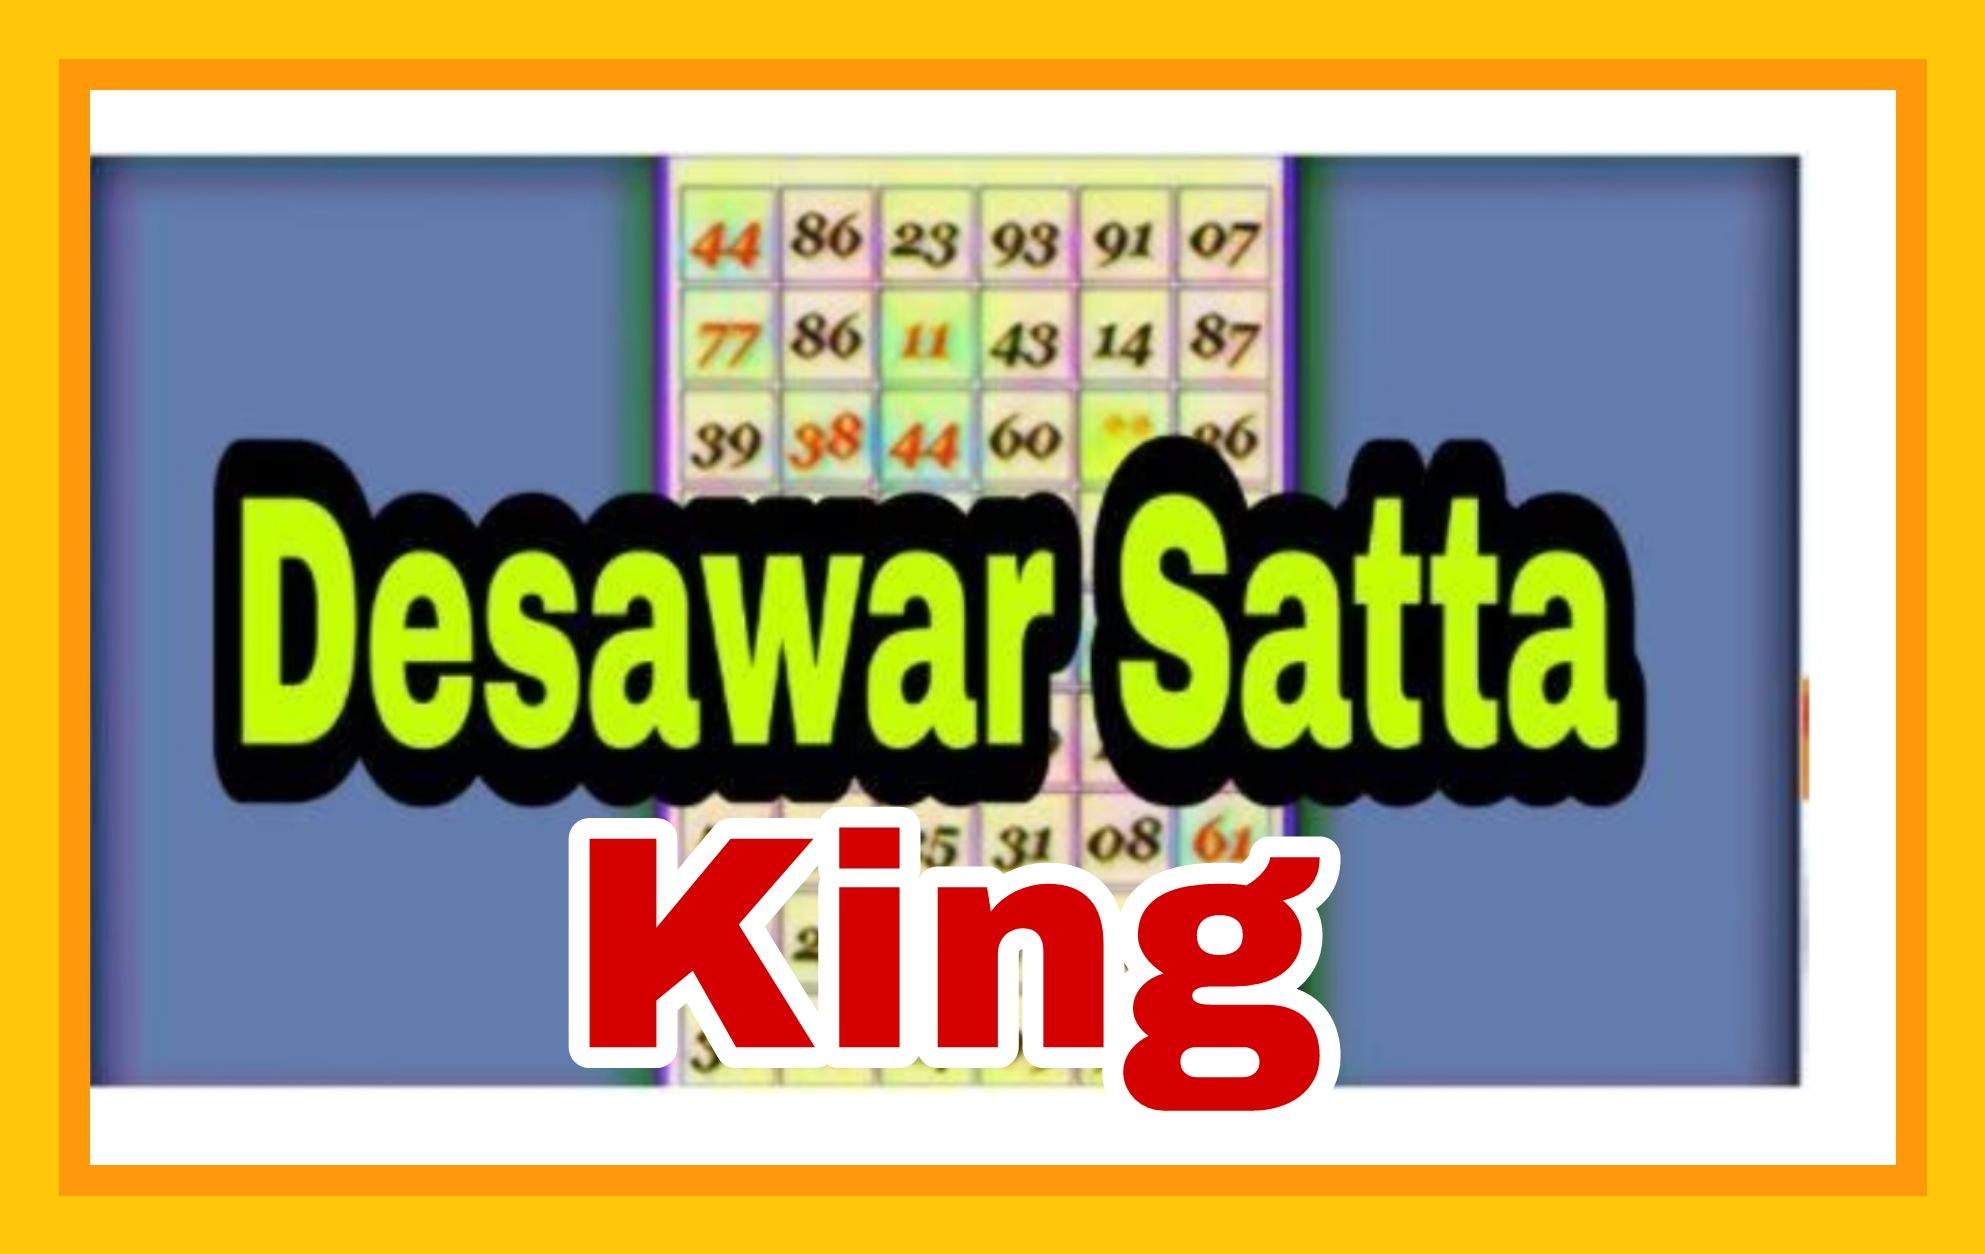 दिसावर सट्टा किंग आज के दिन शनिवार 17.09.2022 का रिजल्ट | Disawar Satta king Aaj ke din Saturday ko result